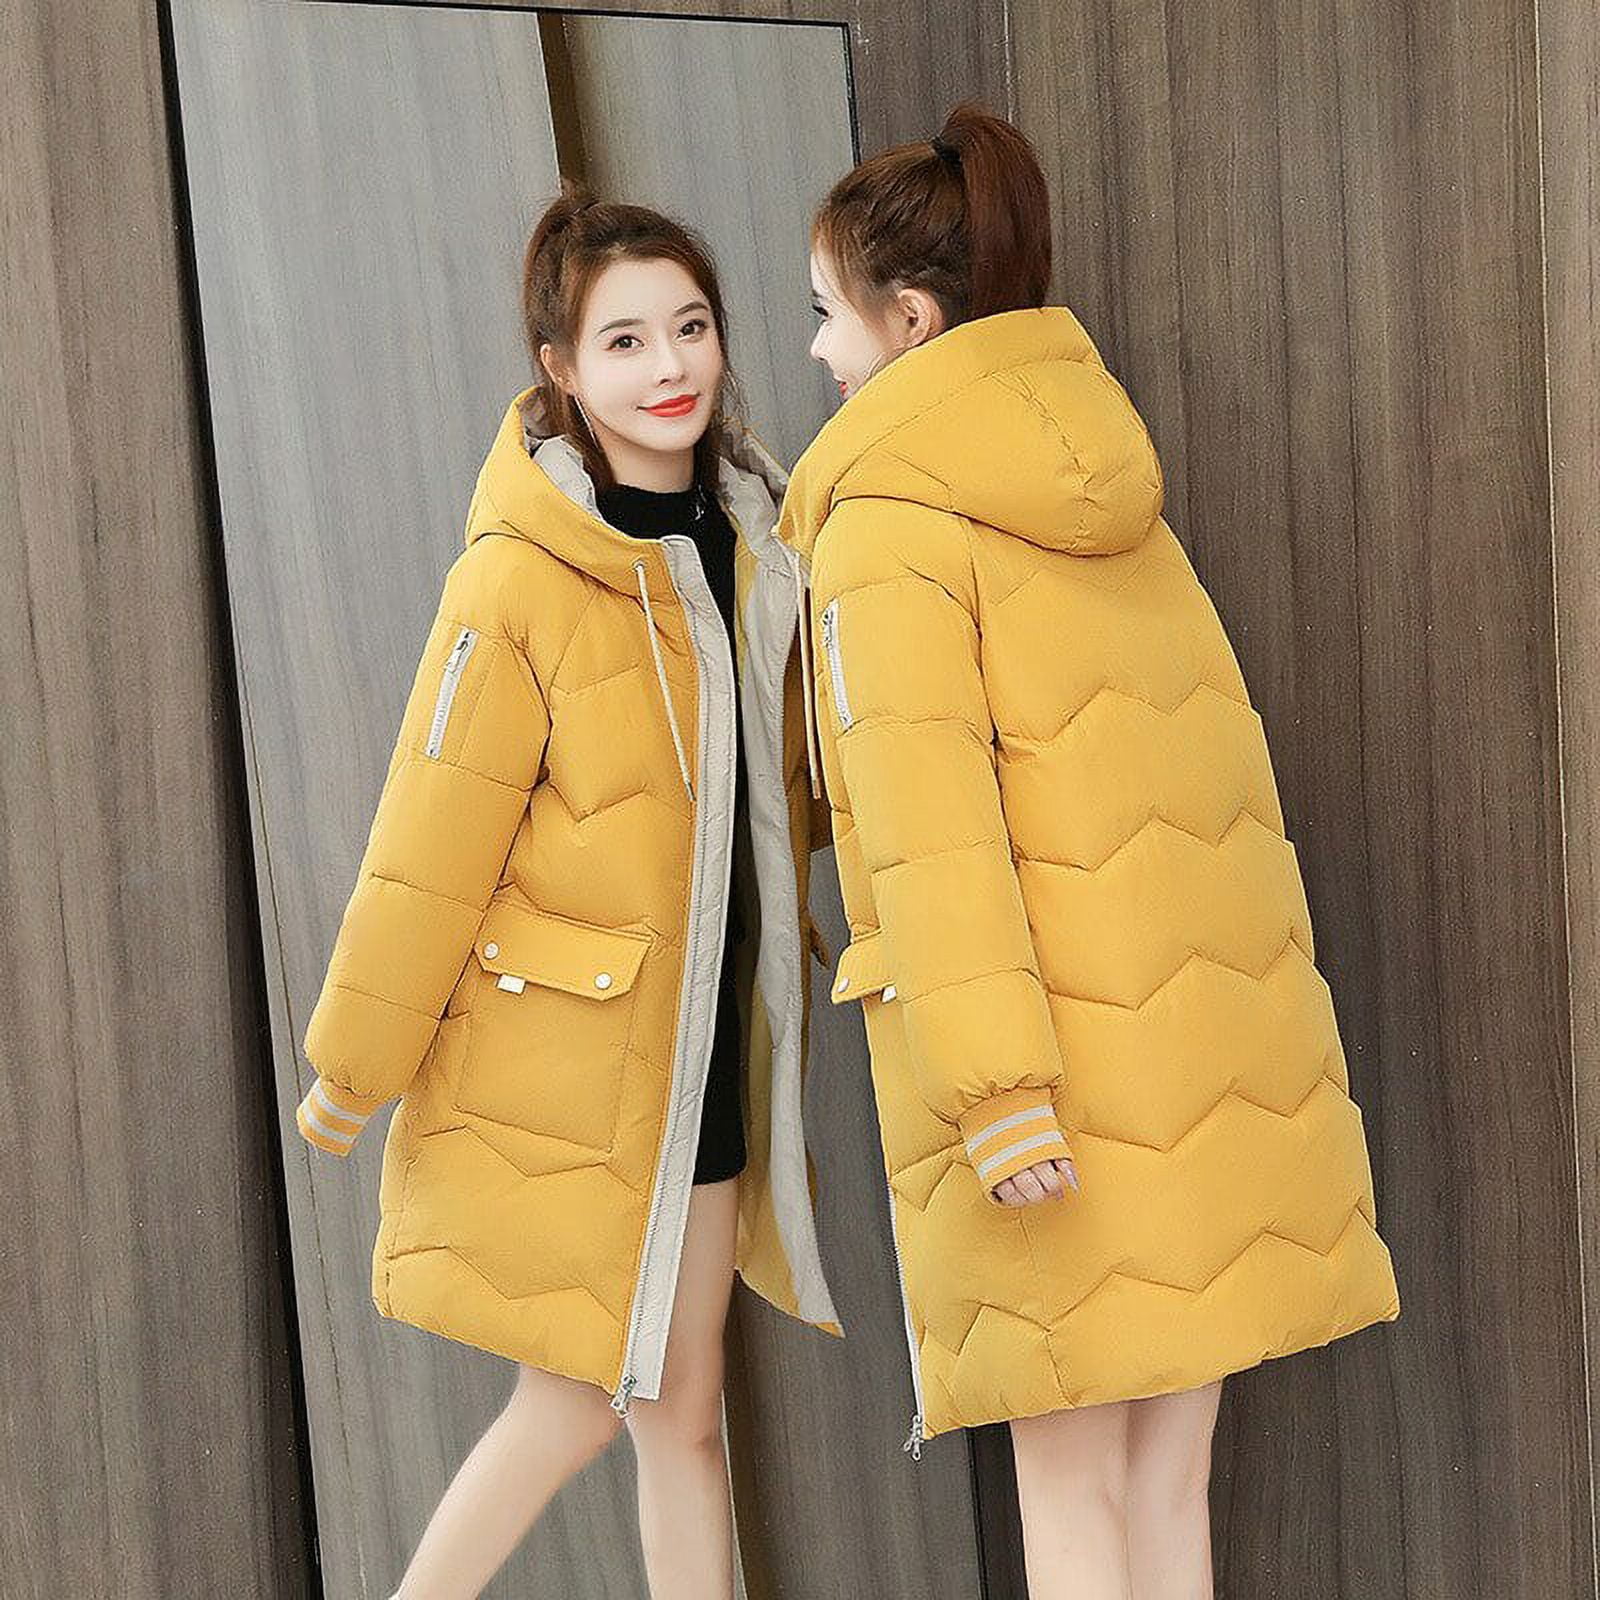 DanceeMangoo Winter Coat Women Fashion Korean Long Jacket Women Clothing  New Female Warm Hooded Parkas Ropa De Invierno Mujer Zm2236 